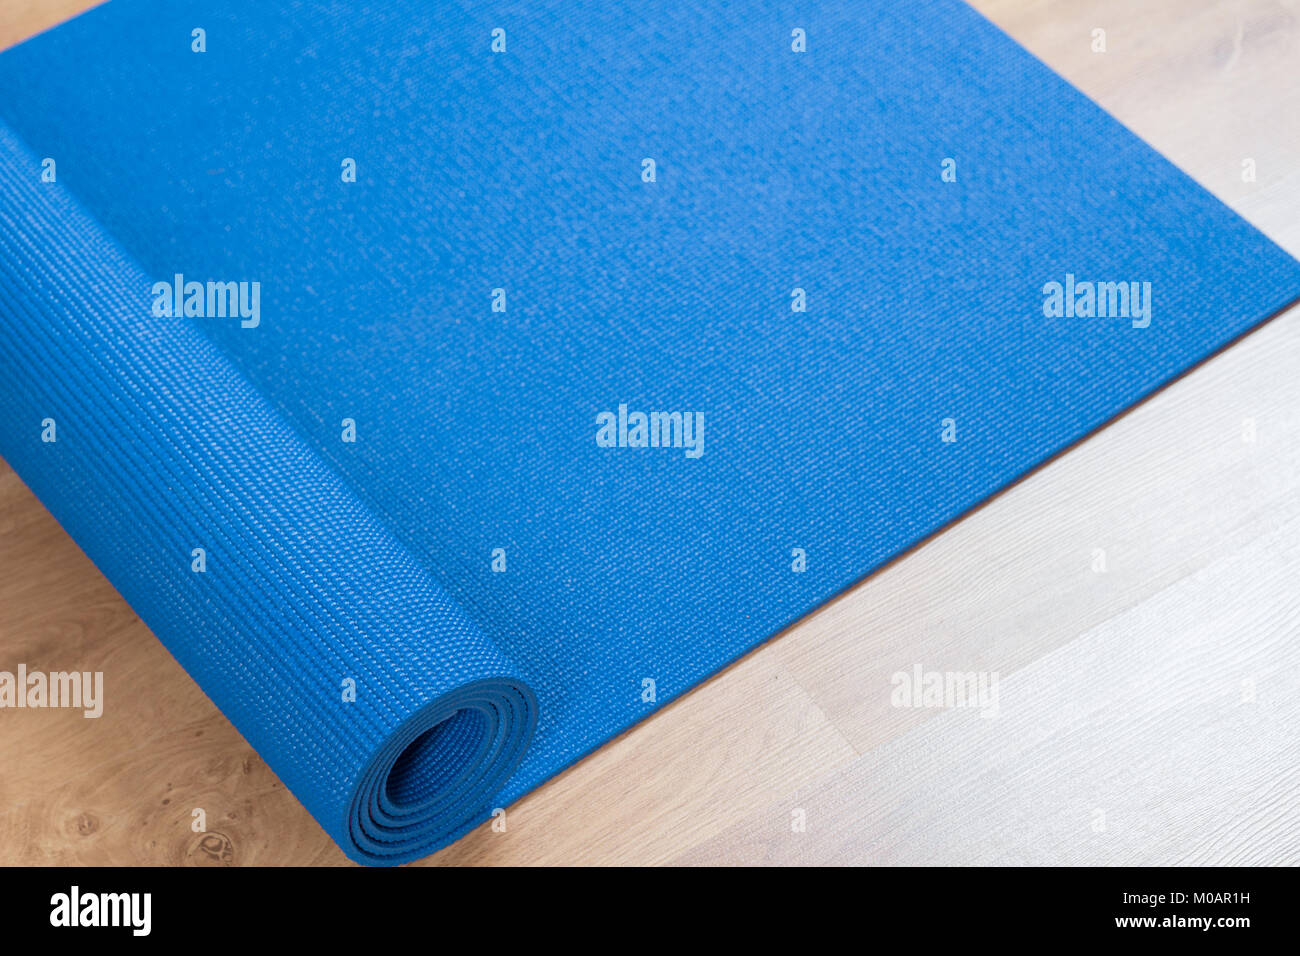 Blau Gymnastikmatte auf Holz Boden Stockfoto